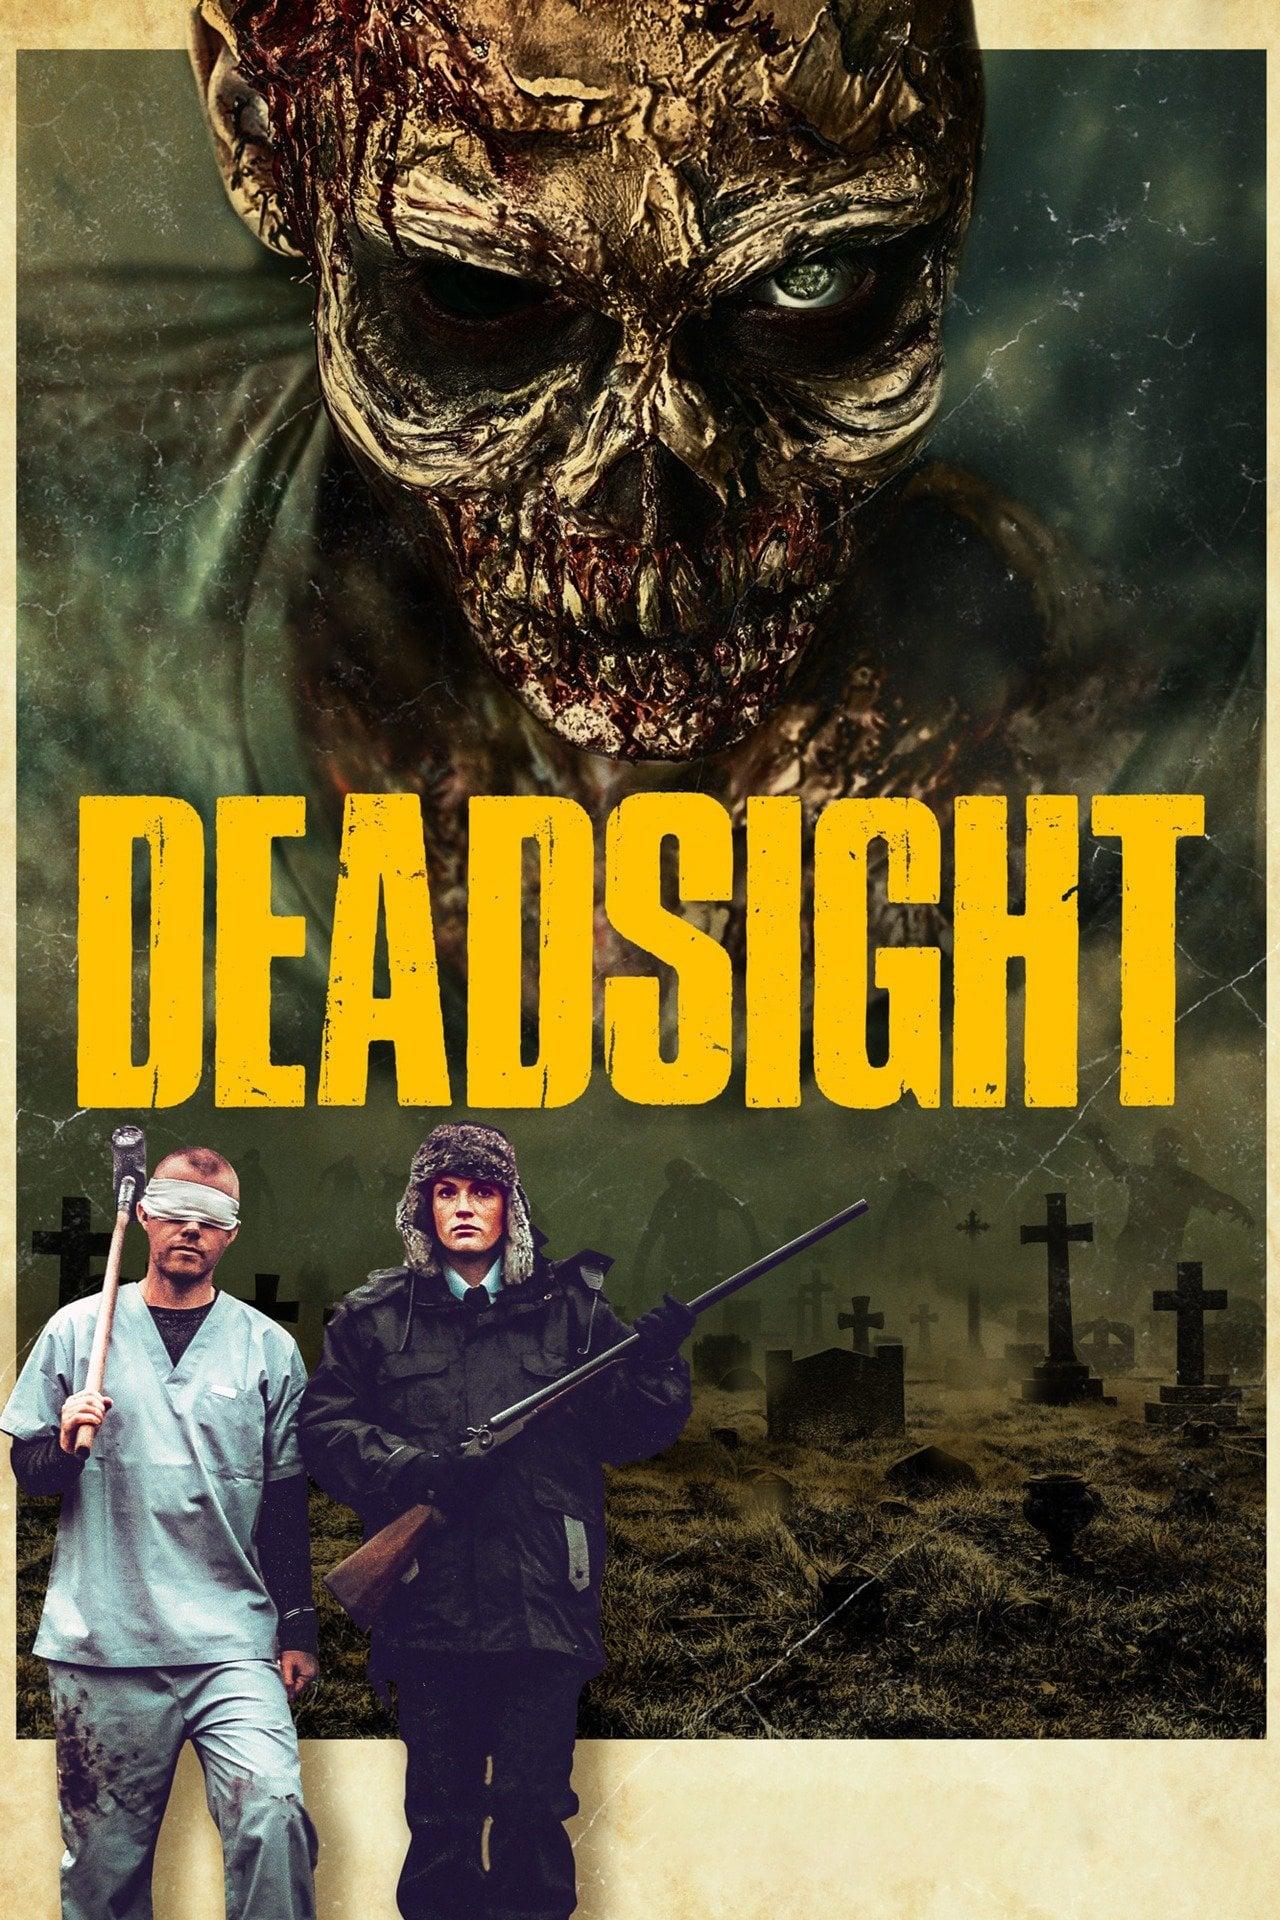 Deadsight poster